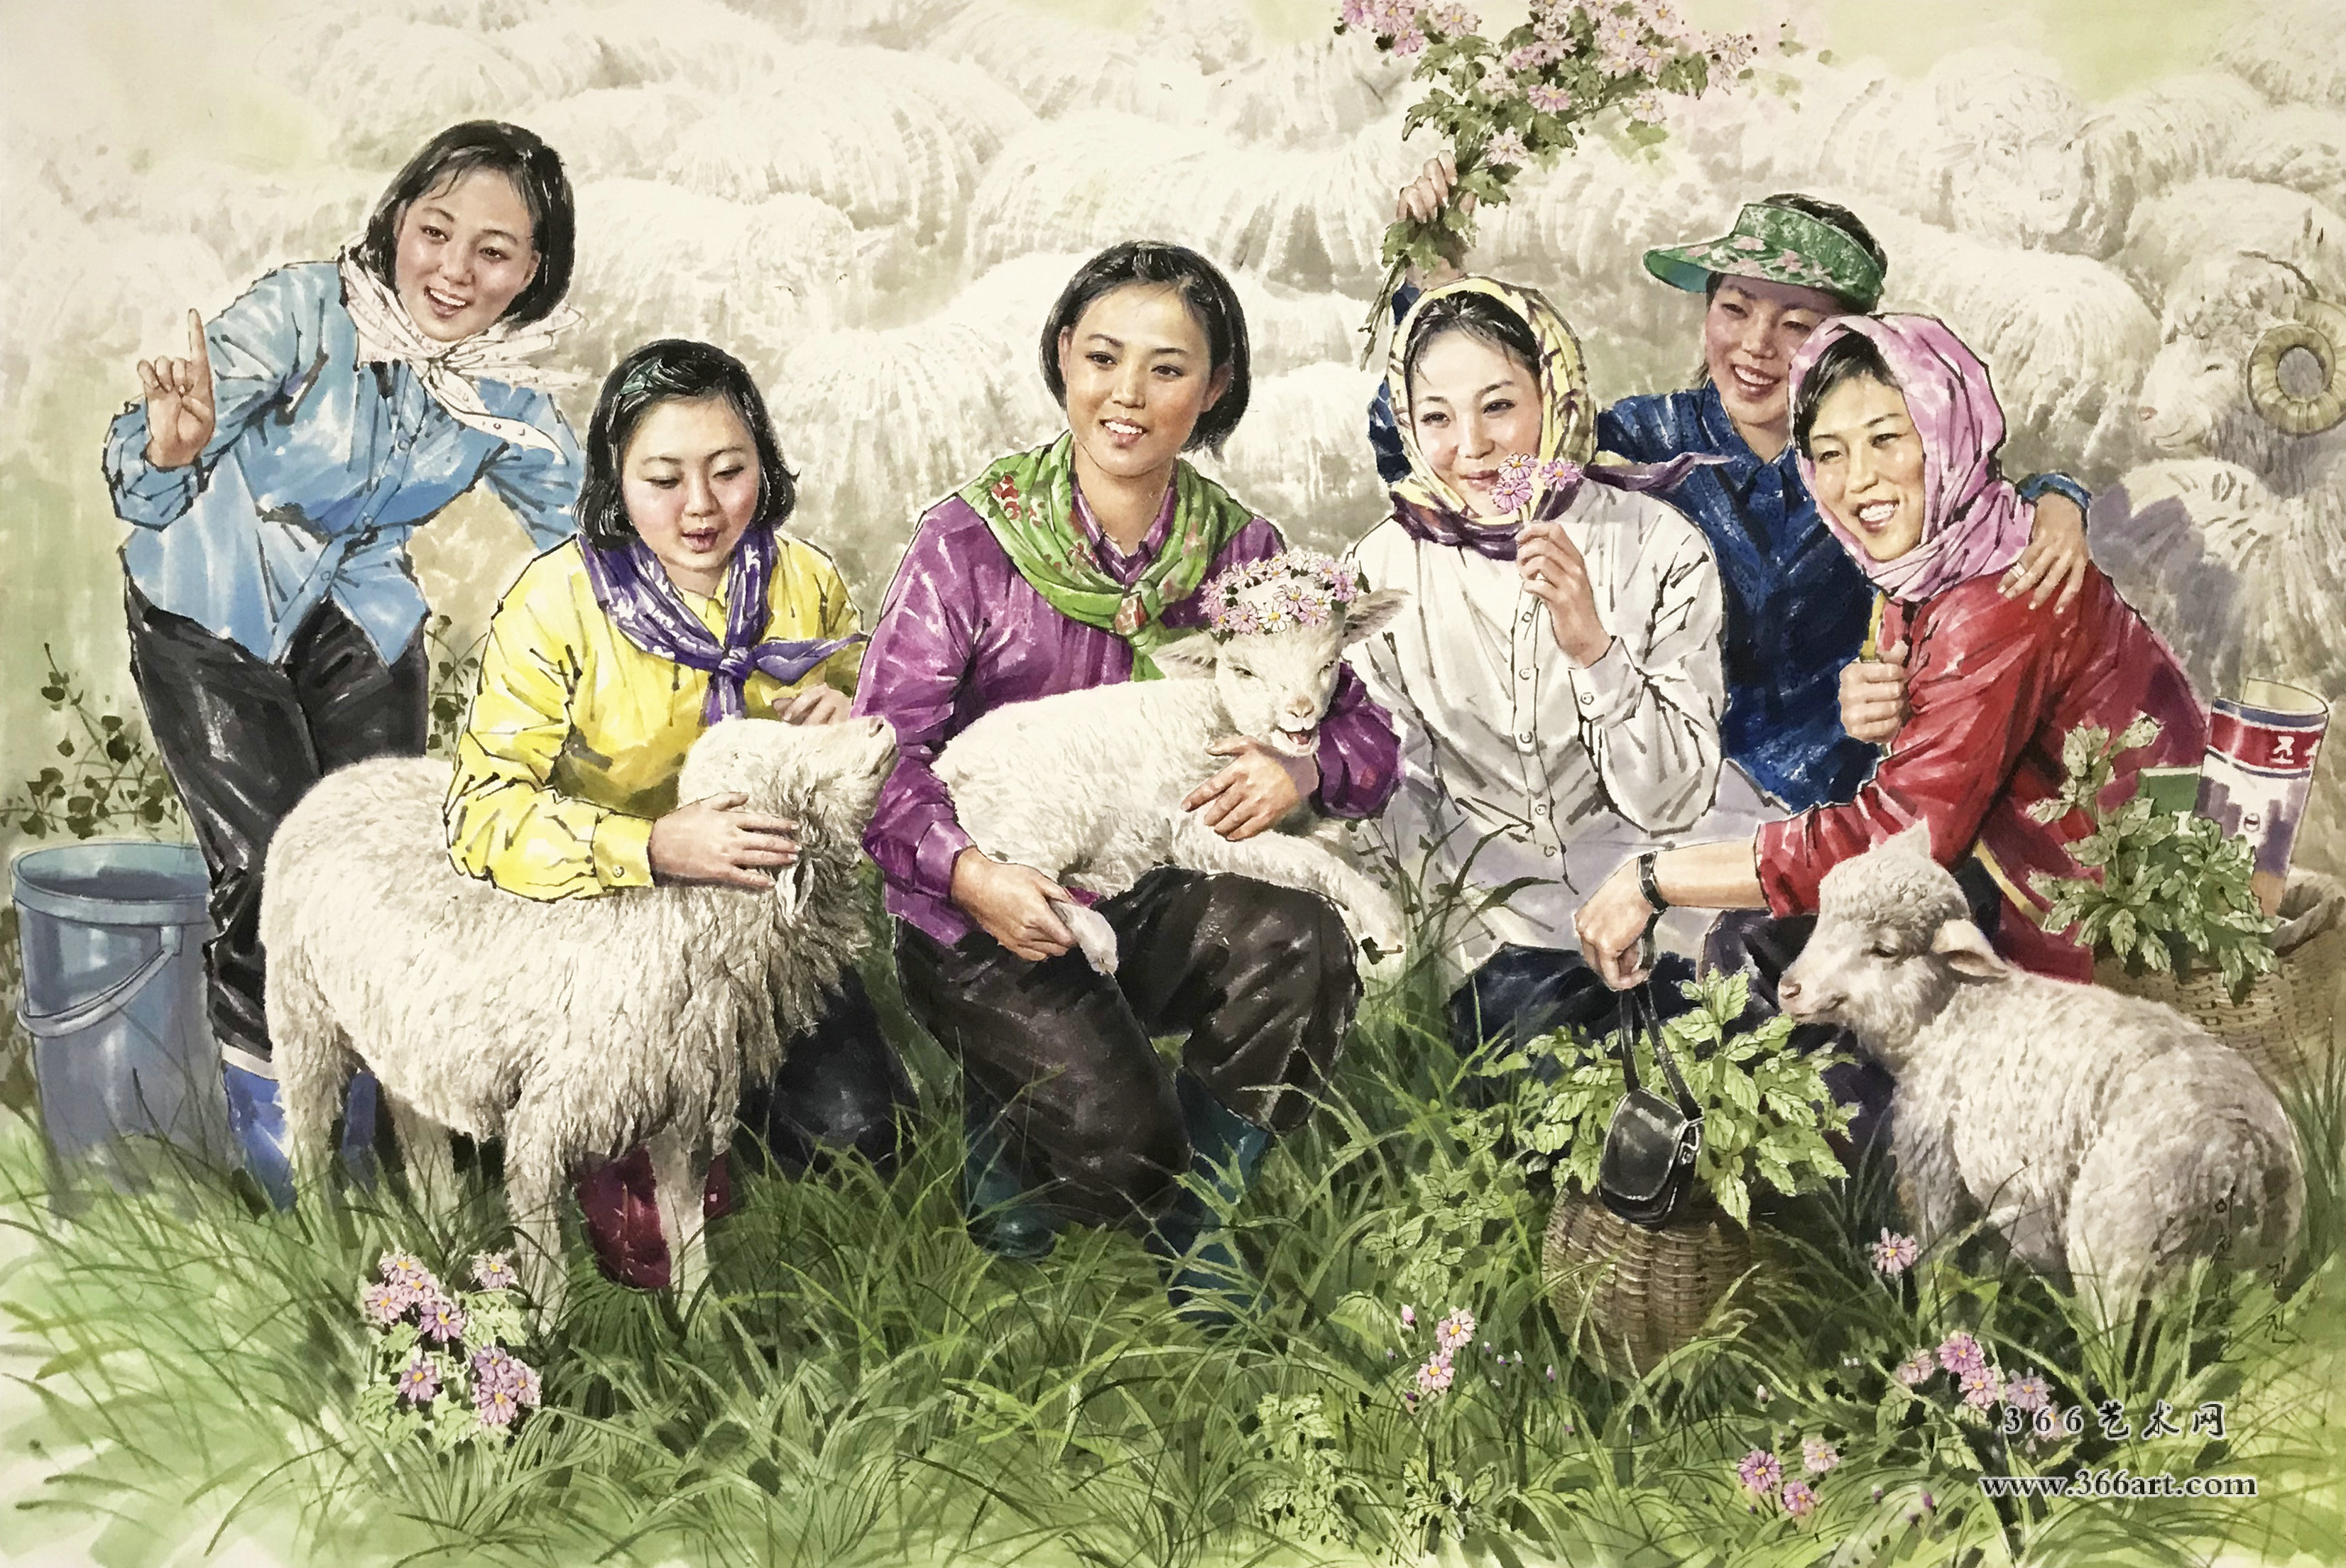 【朝鲜画】金正 劳动的快乐 2018年 188 x 125cm